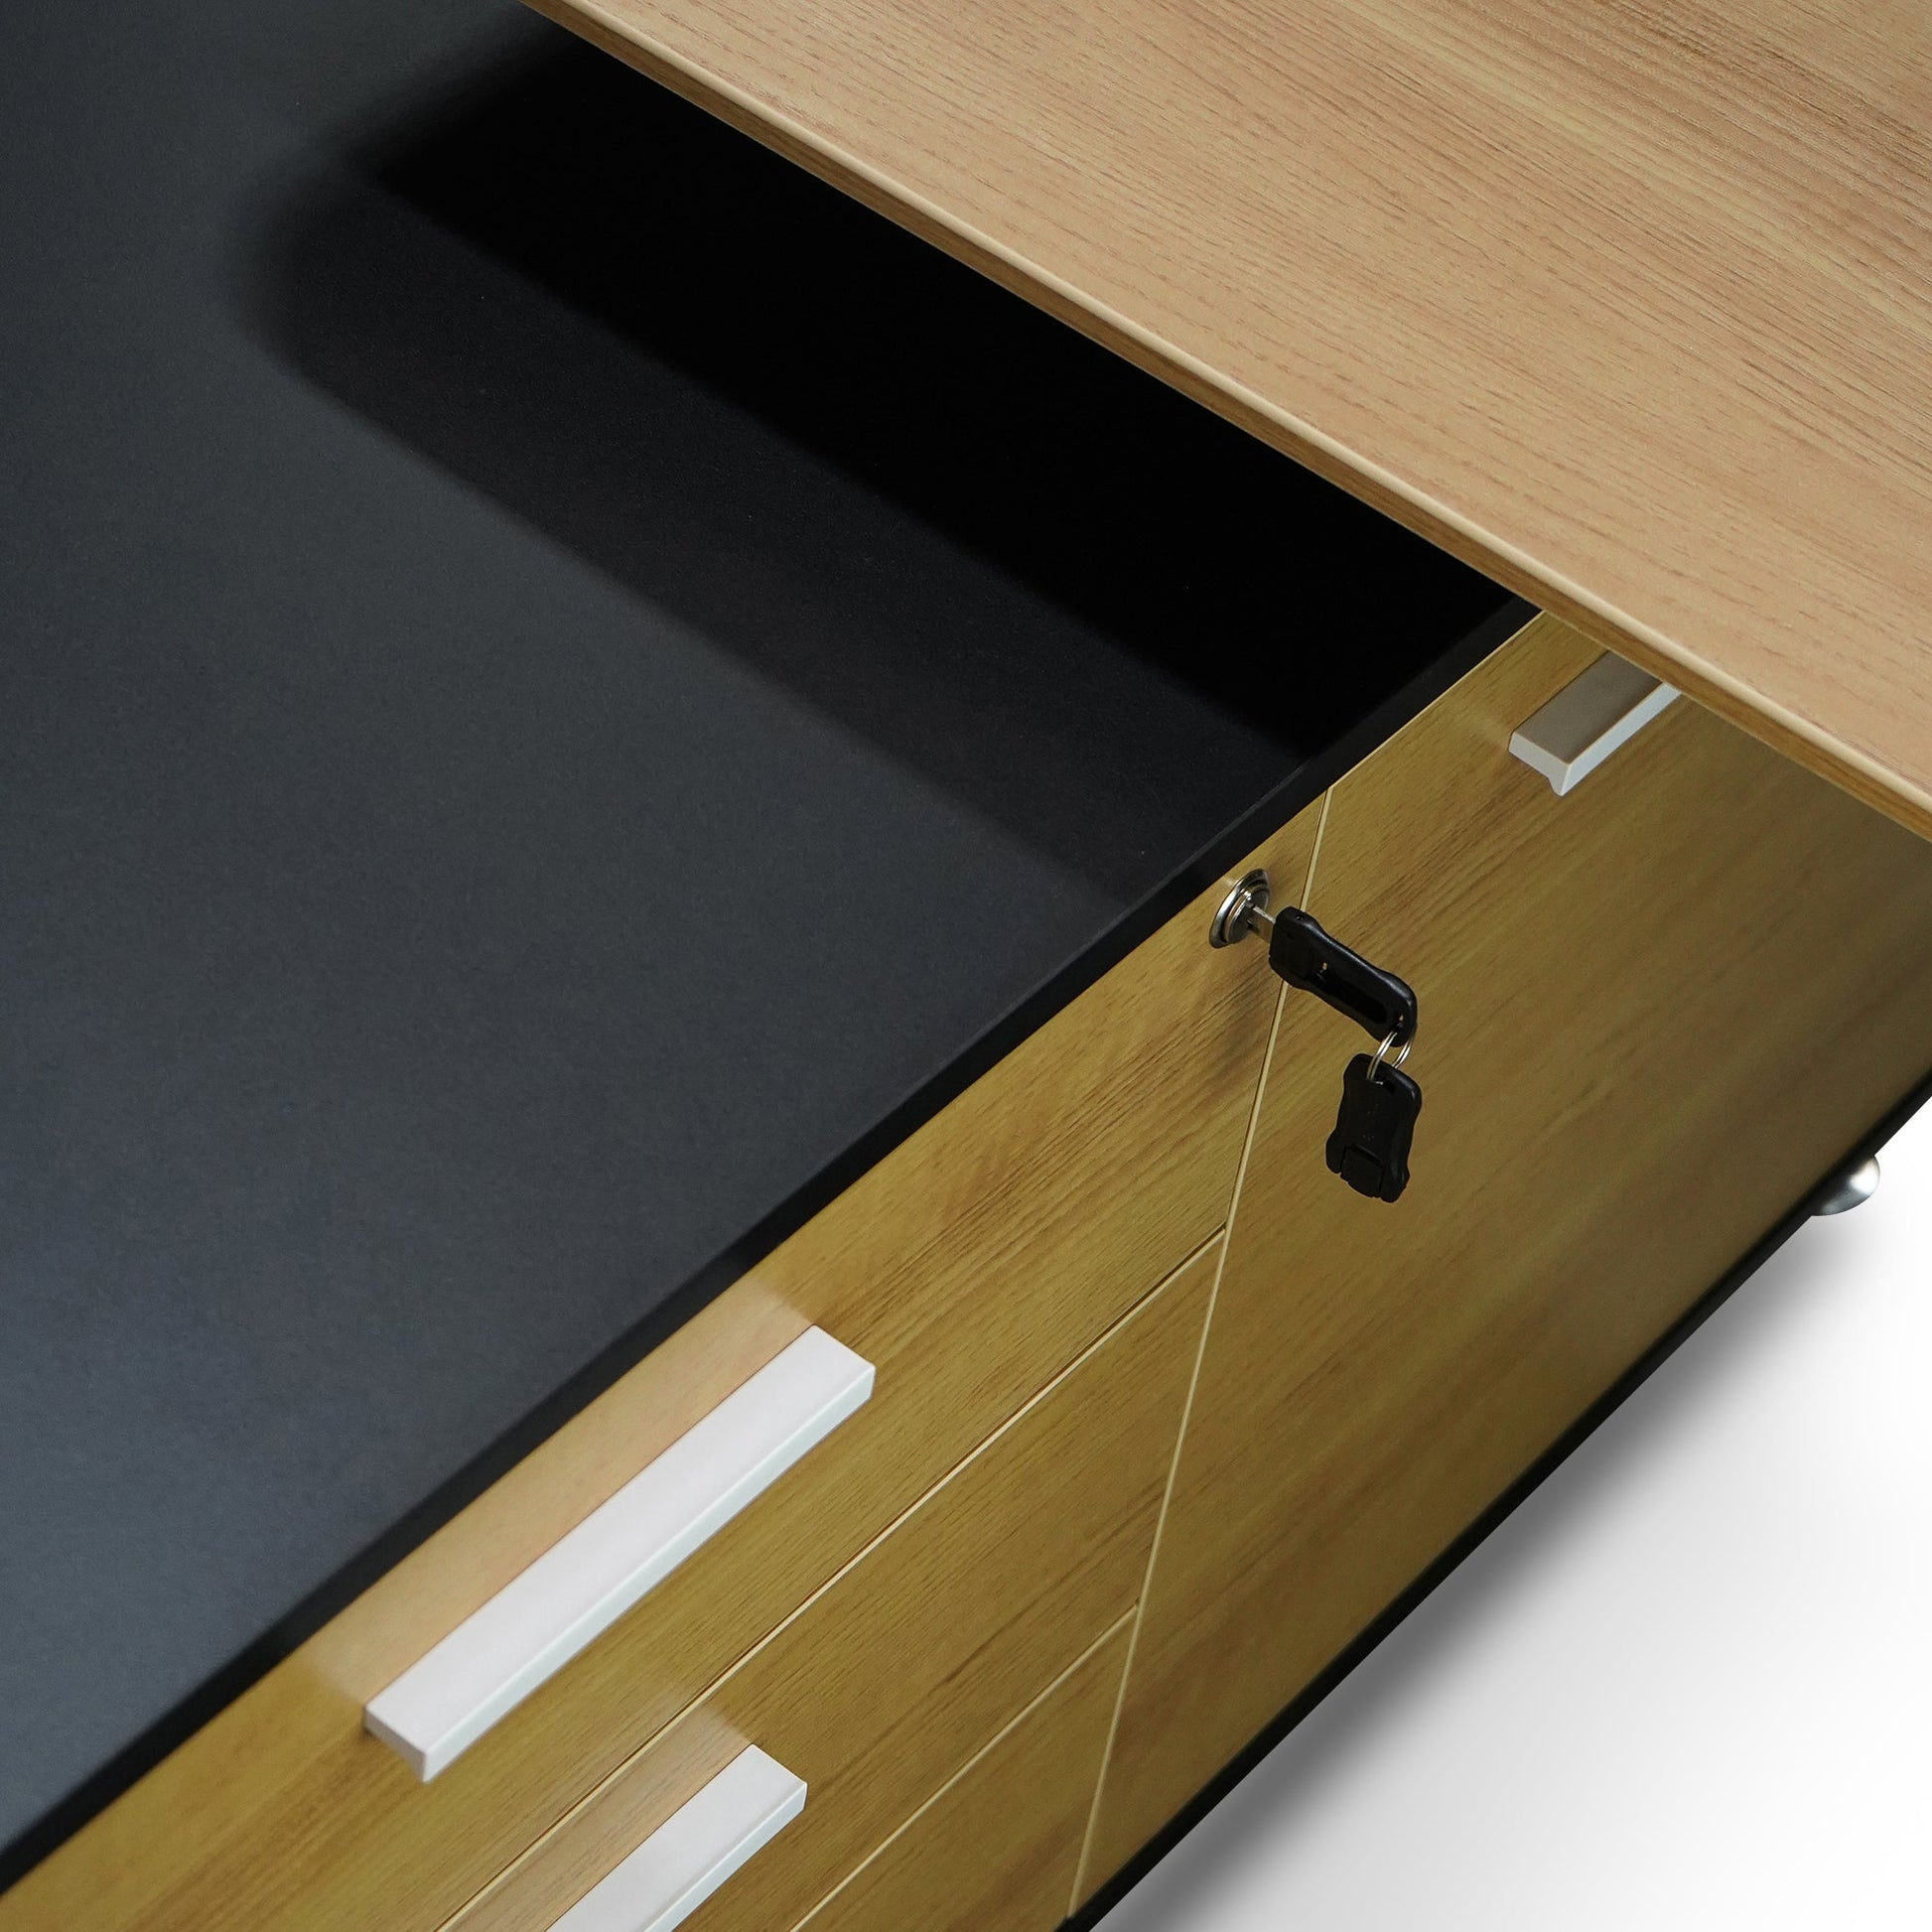 1.95m Executive Desk Left Return - Black Frame with Natural Top and Drawers-Office Desks-Calibre-Prime Furniture